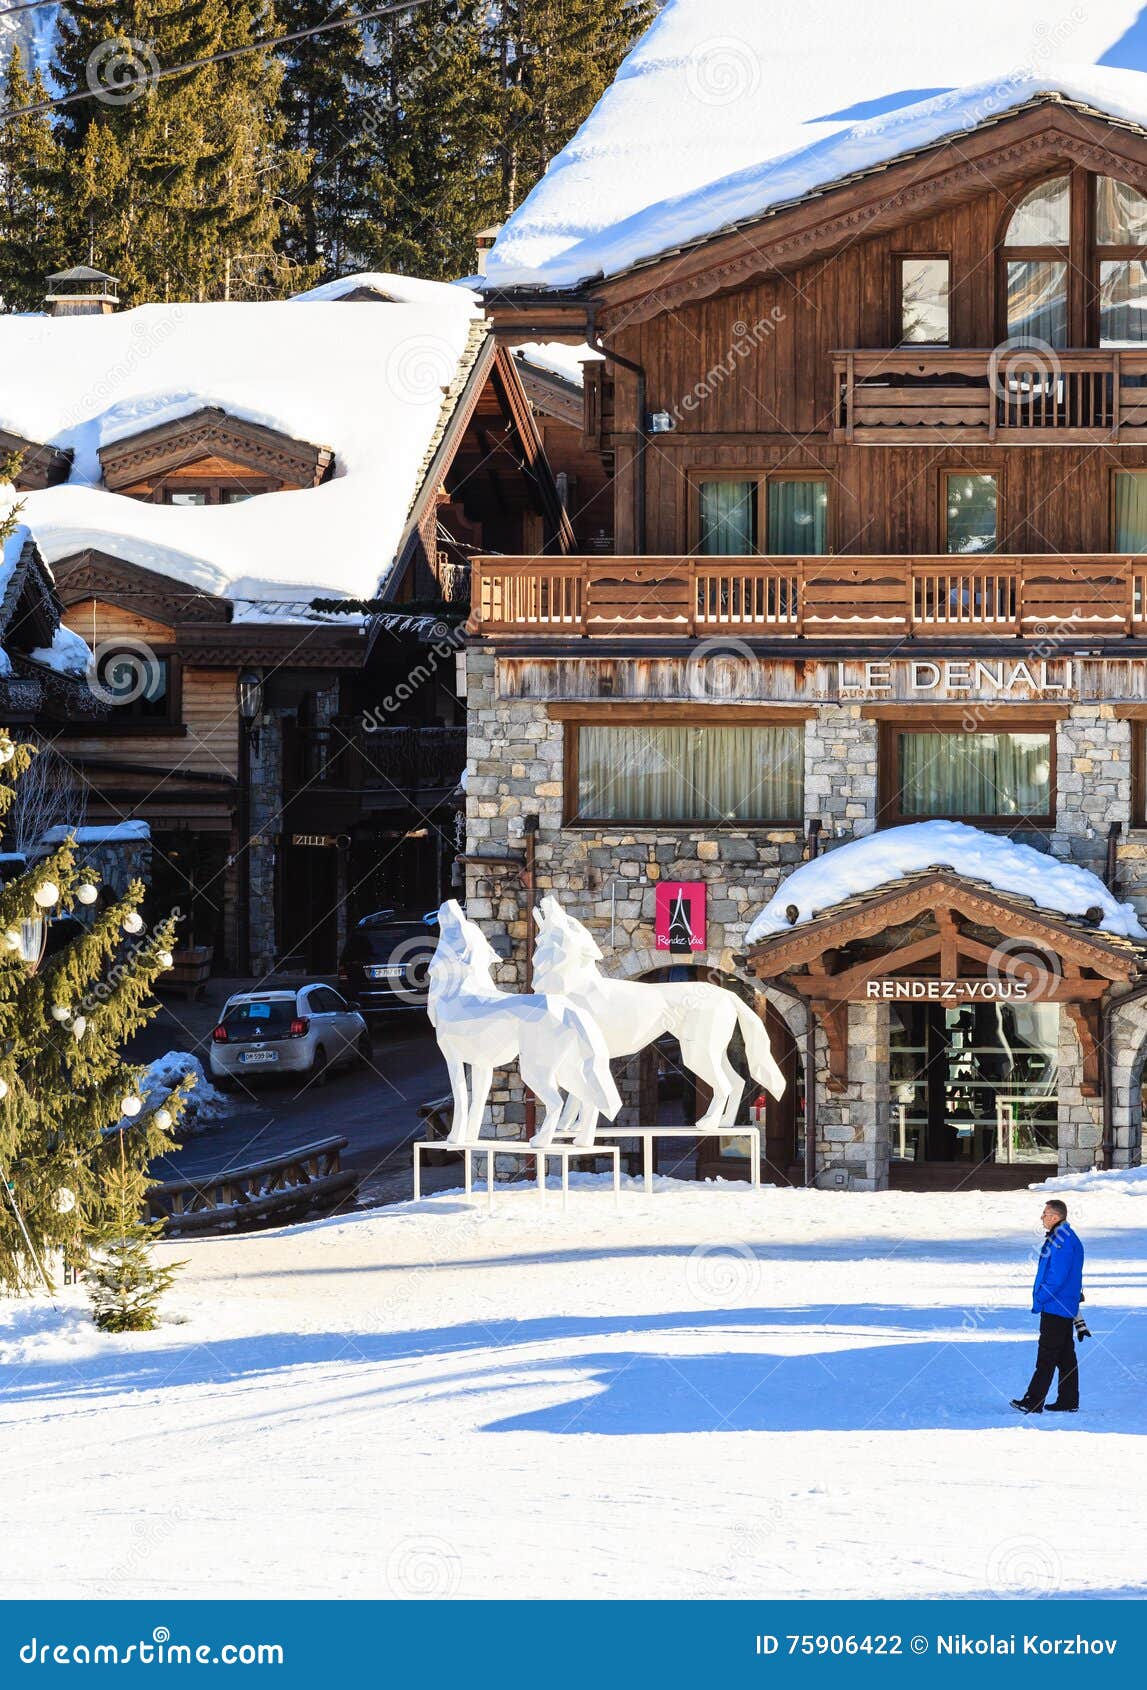 Ski Resort Courchevel 1850 M in Wintertime. Le Denali Hotel